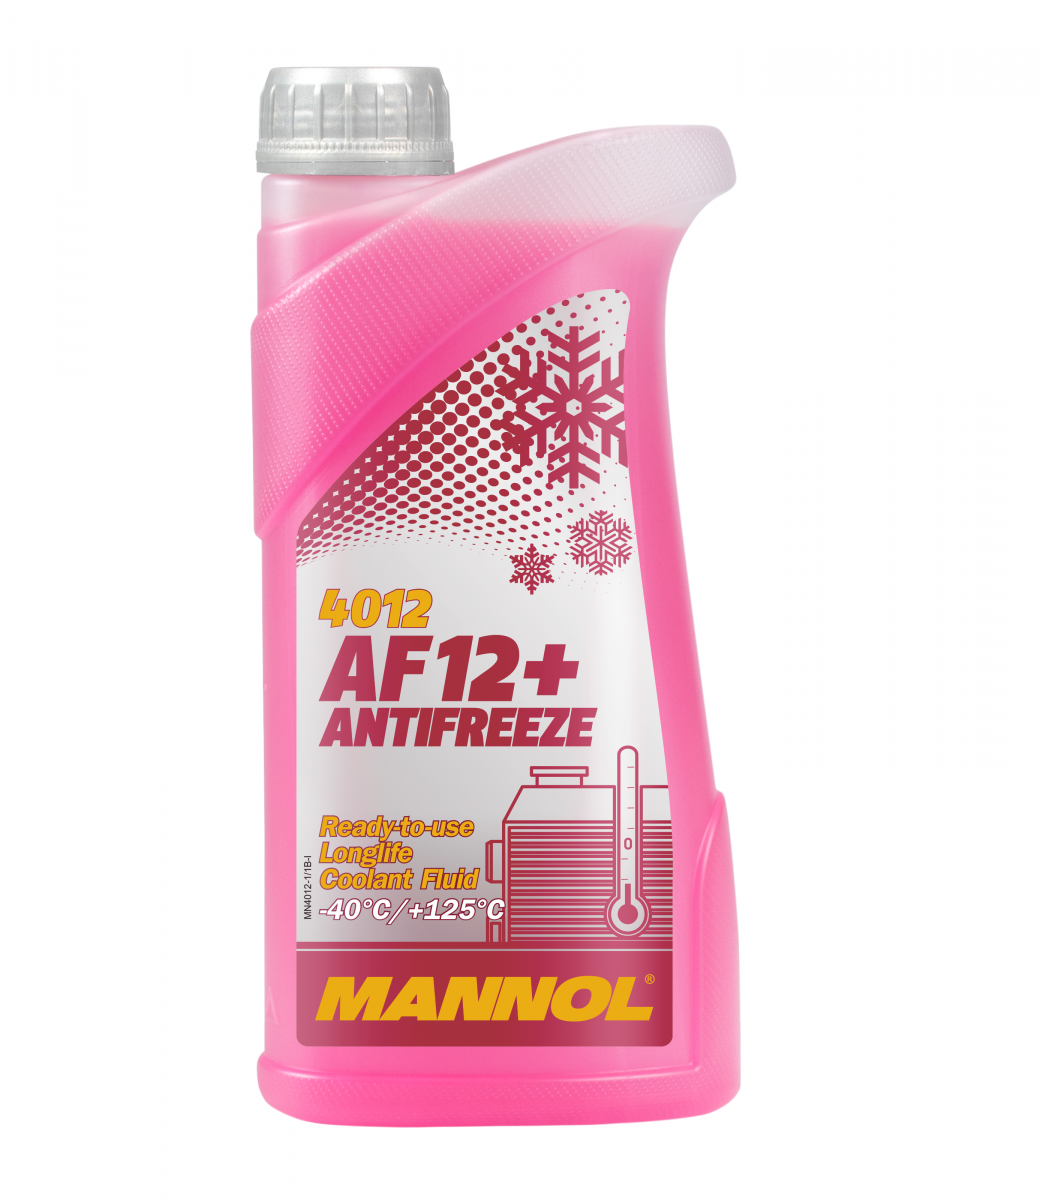 MANNOL AF12+ Antifreeze (-40°C) ready-for-use 1L